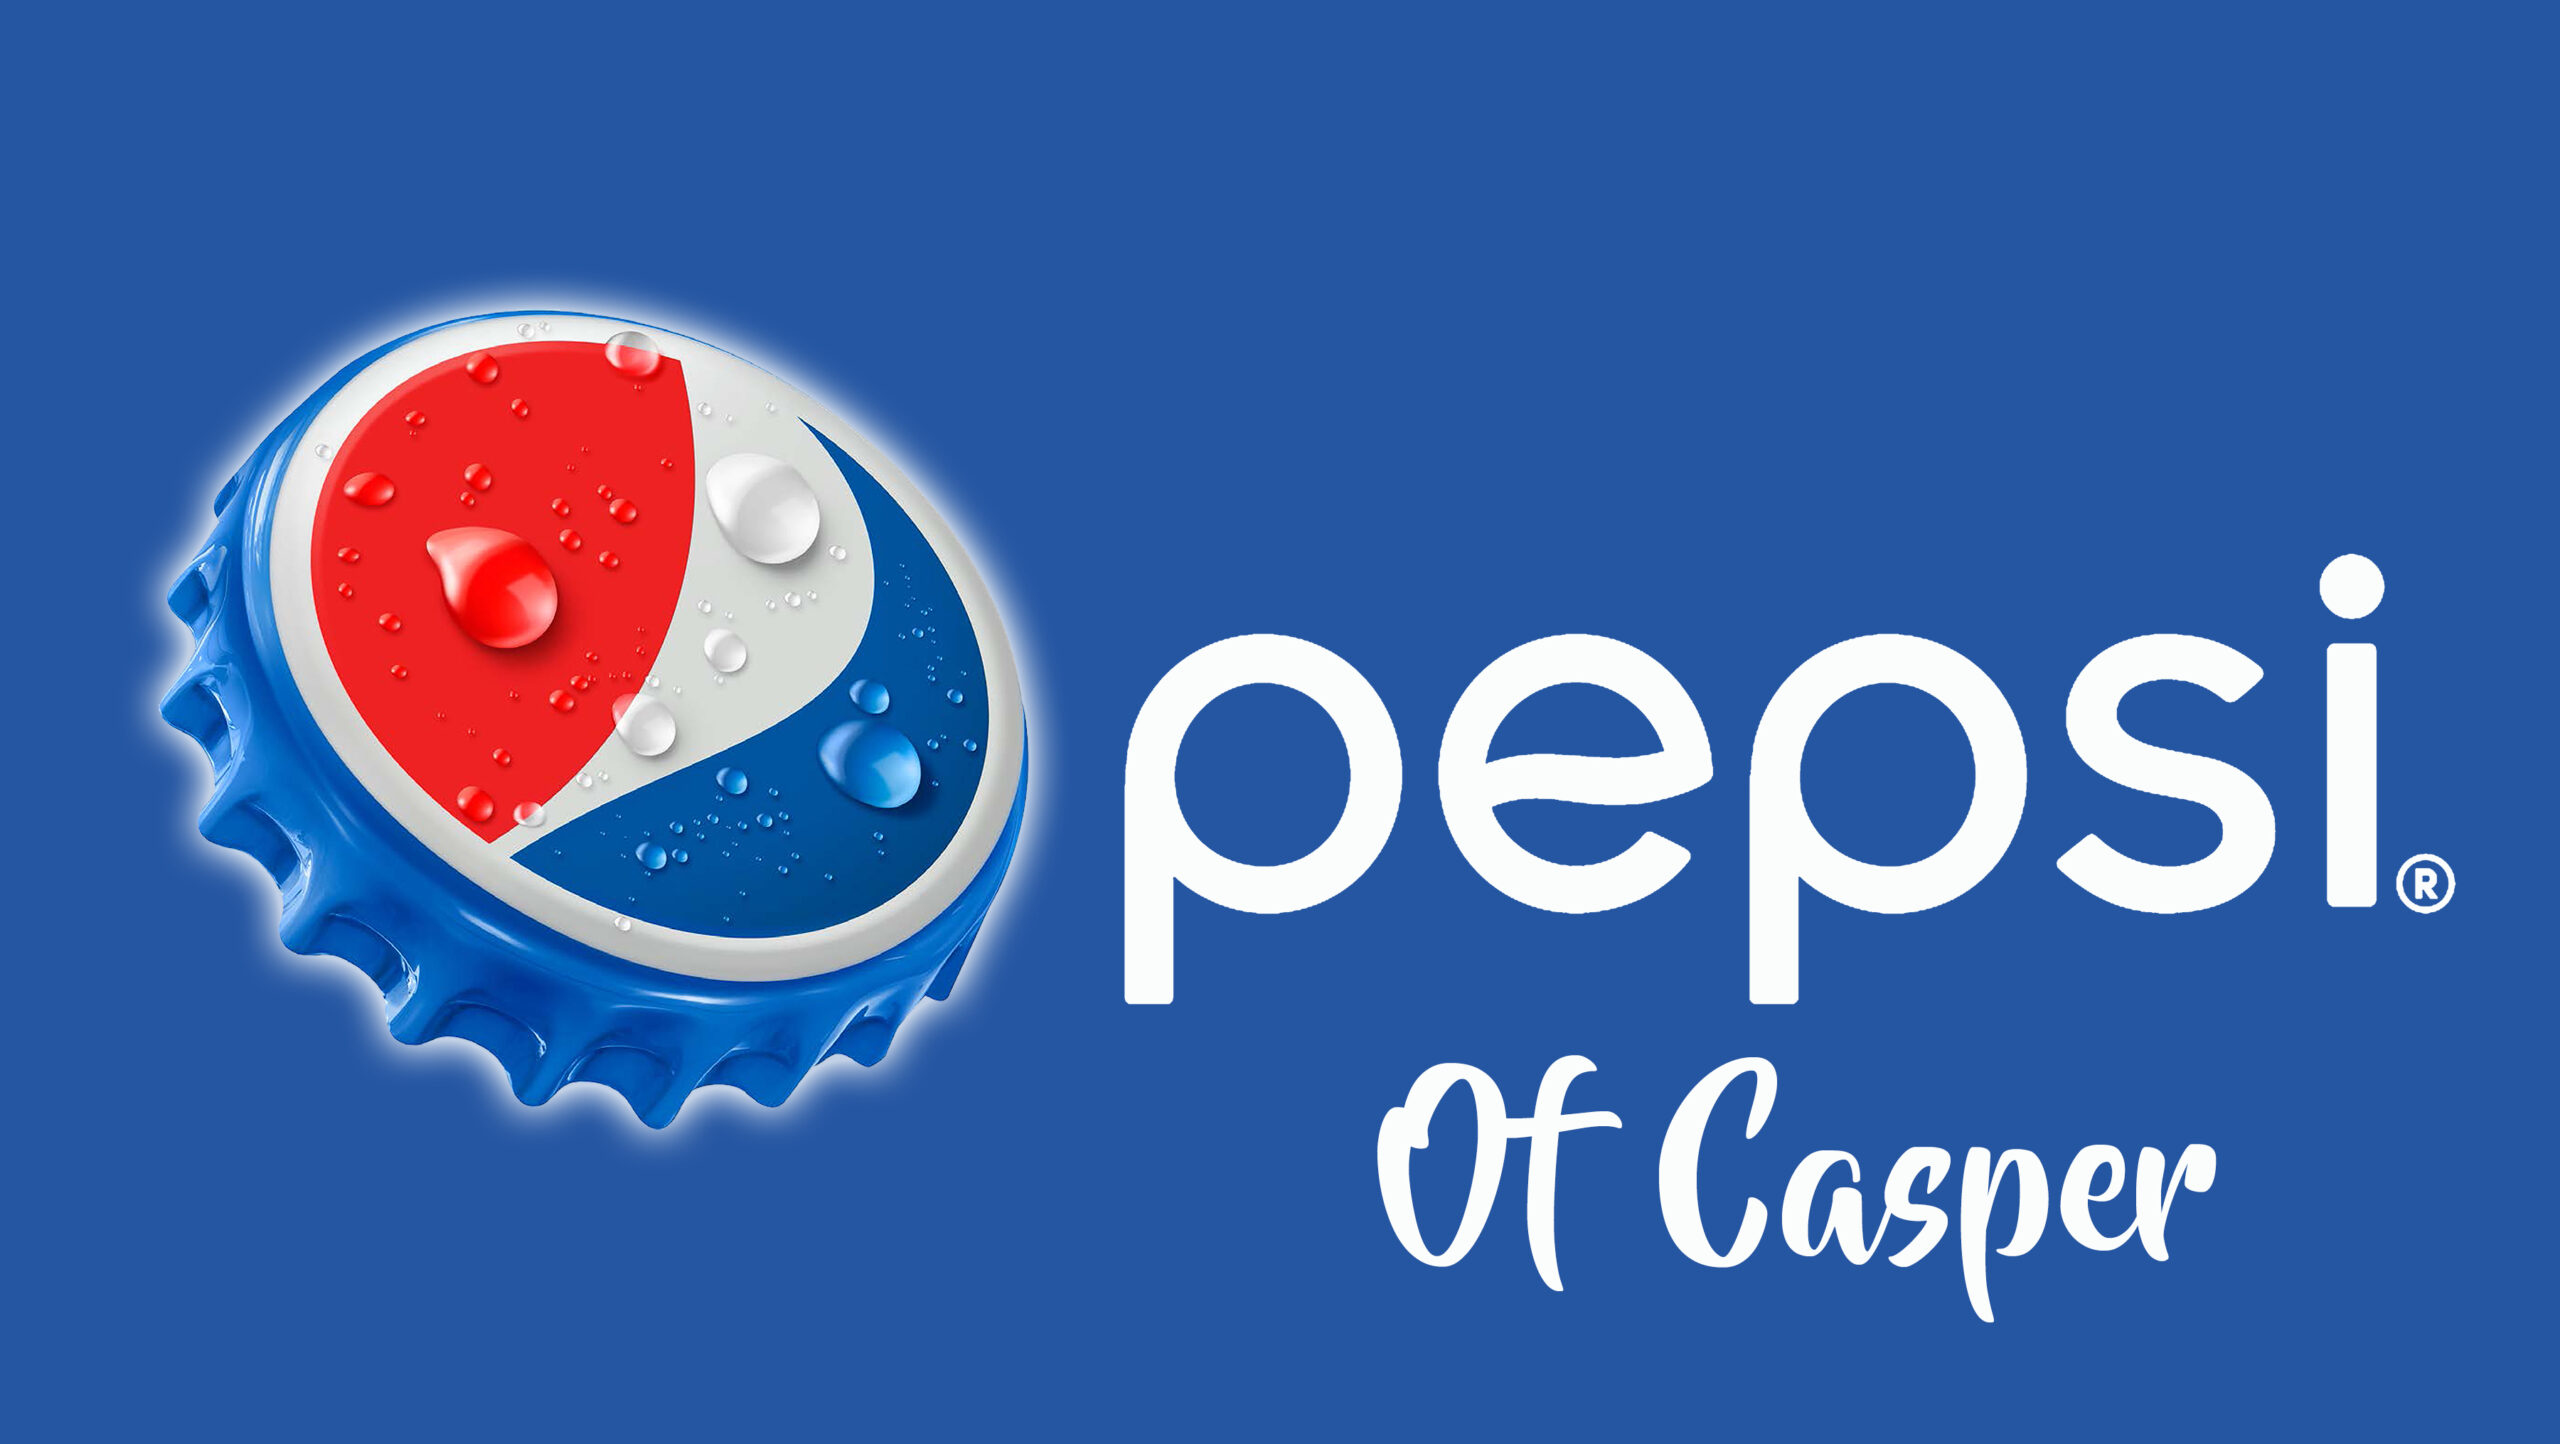 bottlecap logo with pepsi casper (1)